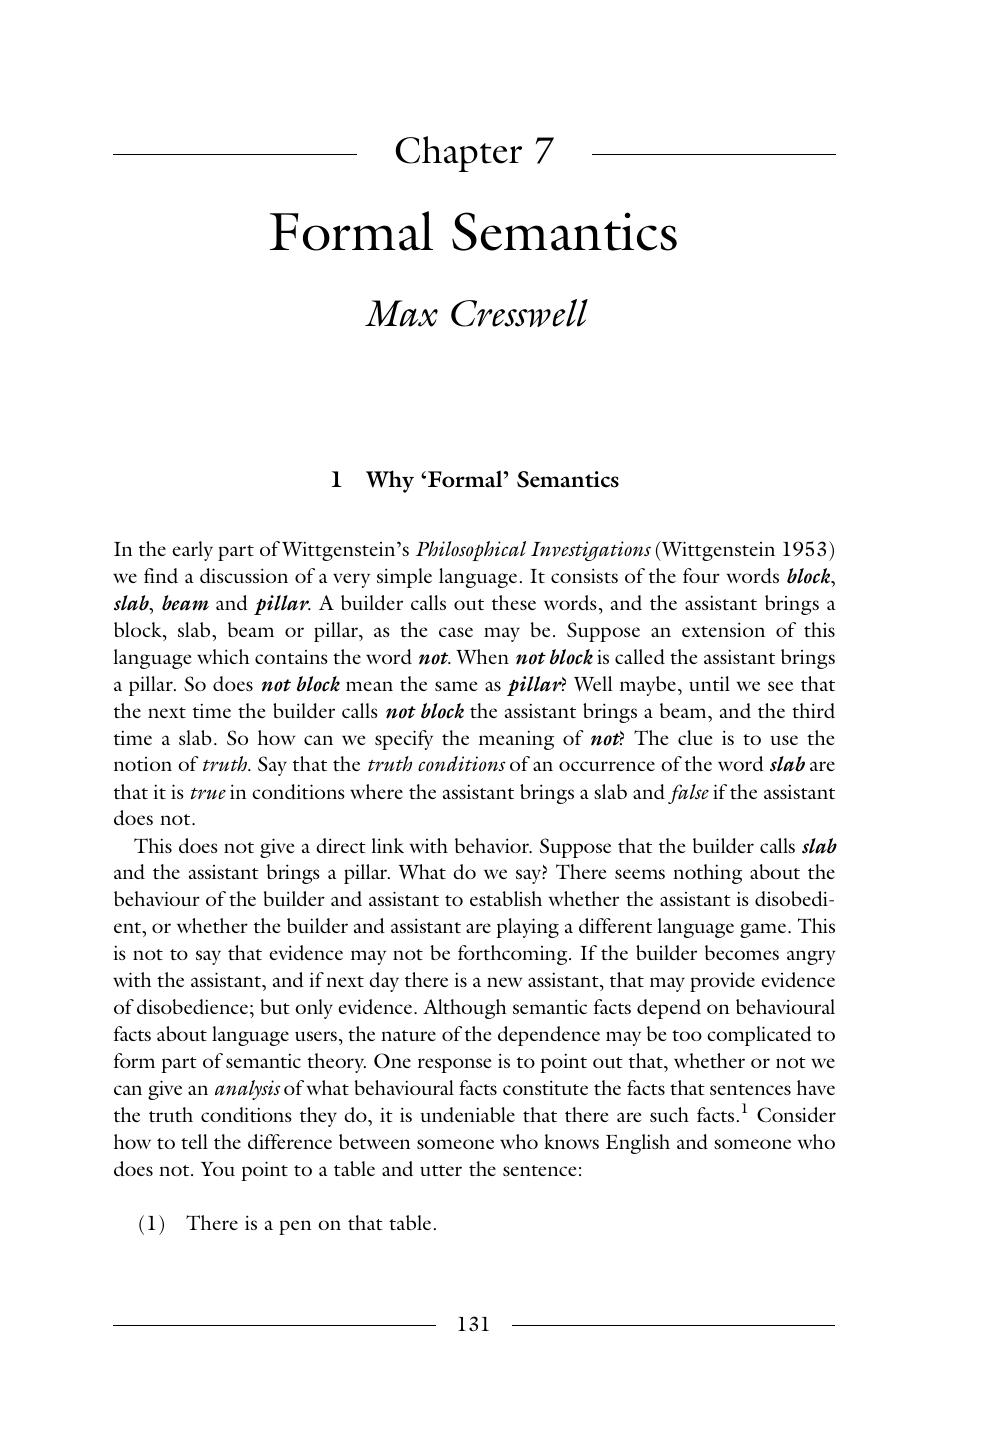 Formal Semantics - Chapter 7